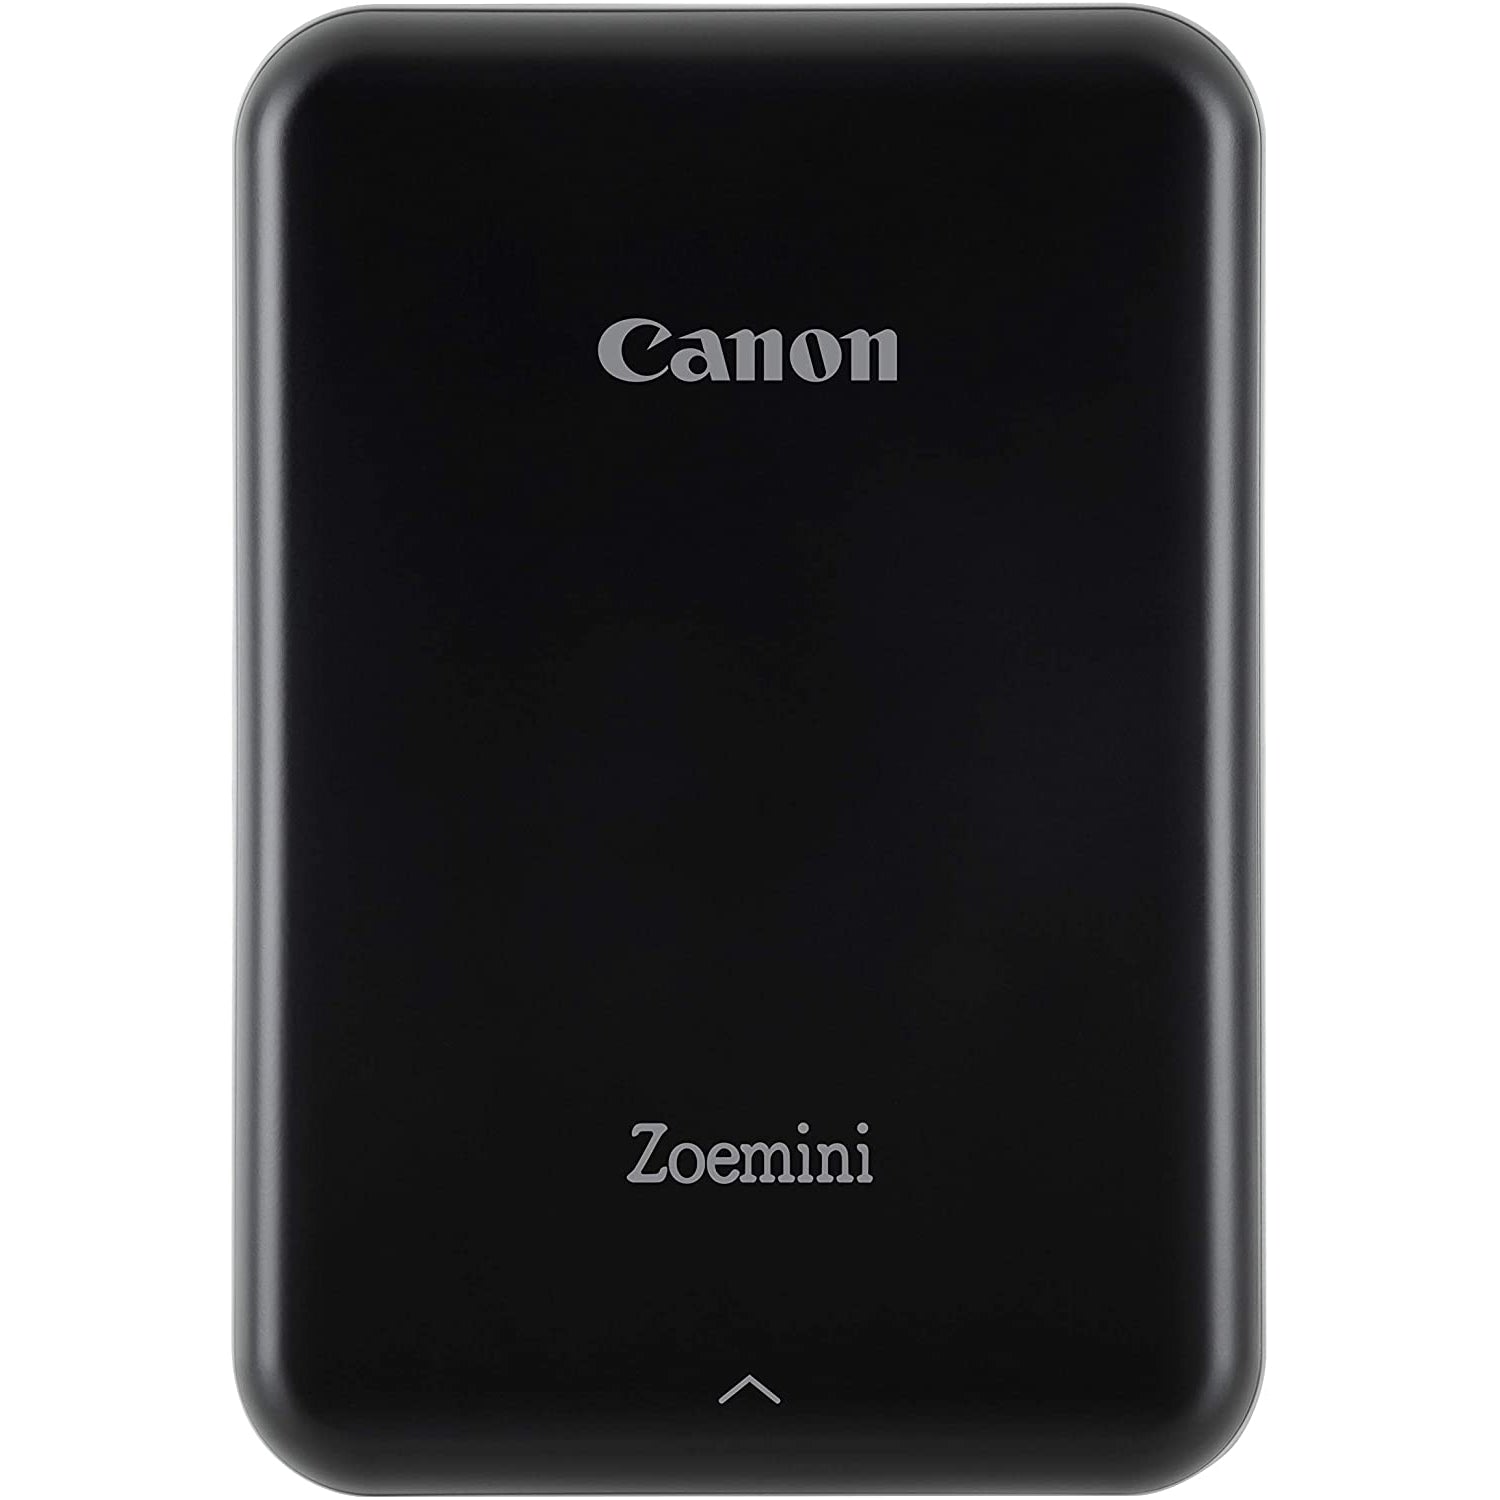 Canon Zoemini Portable Photo Printer - Black